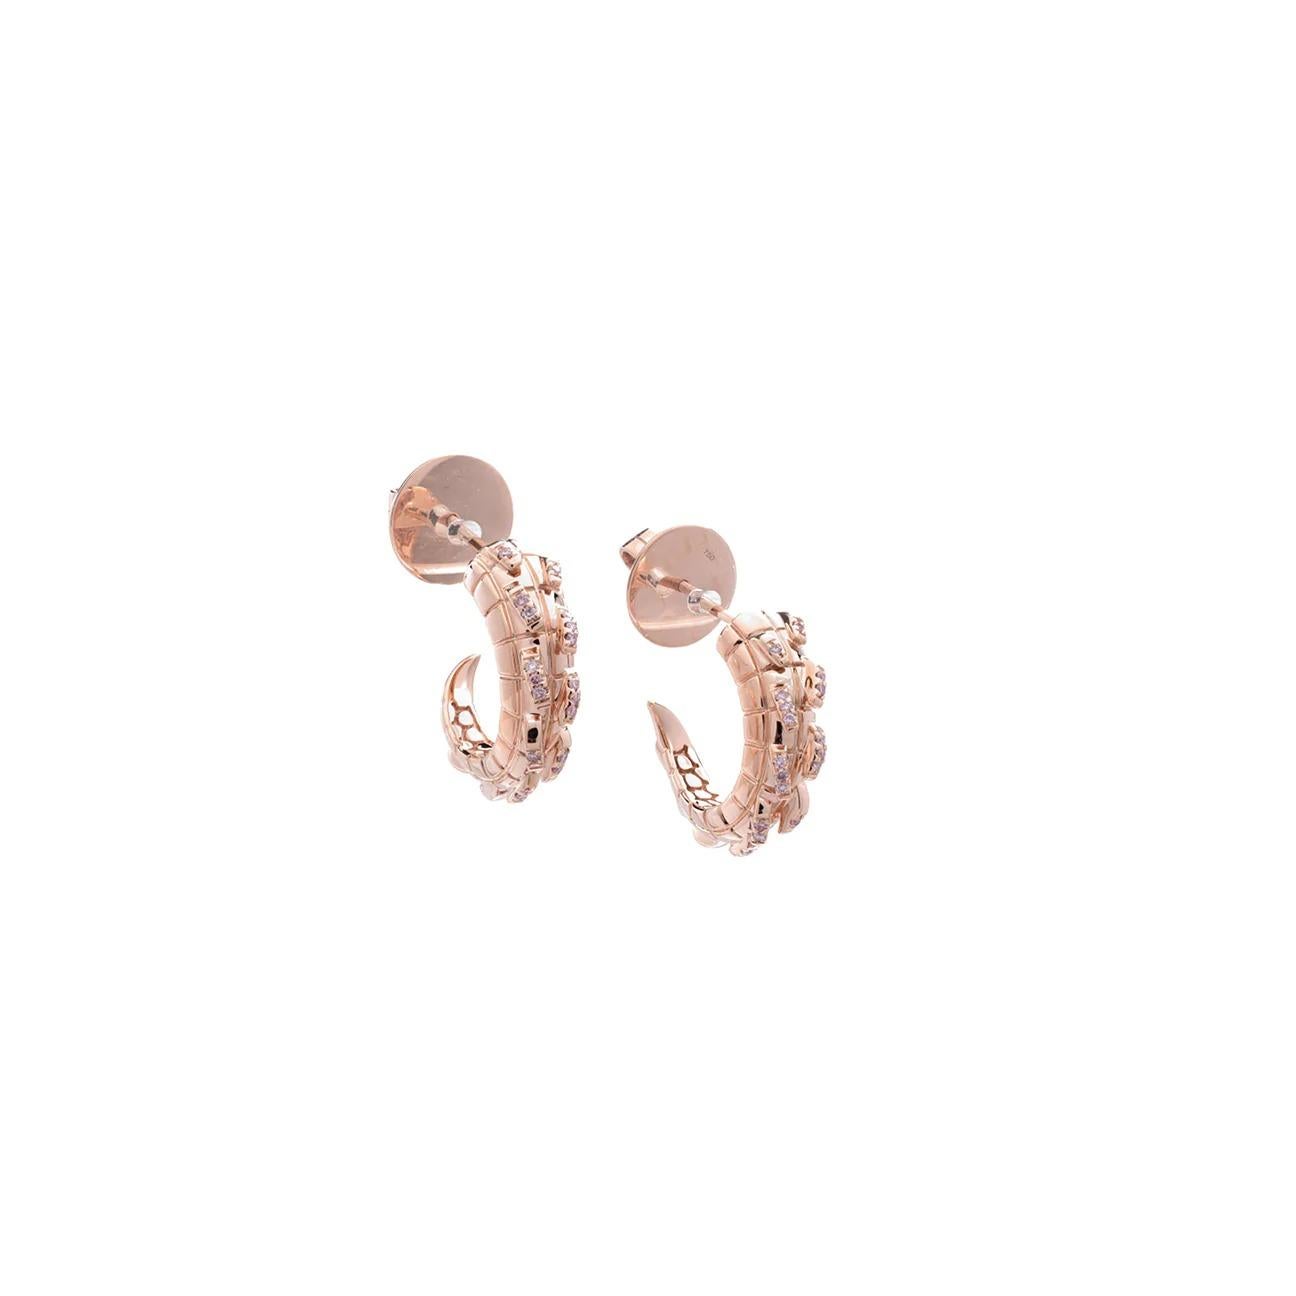 Une paire d'anneaux sophistiqués avec un côté féroce. Agrémentés de diamants roses Argyle australiens d'une rareté exquise pour un look élevé de jour comme de nuit, ces anneaux portent toutes les marques subtiles d'un savoir-faire exceptionnel. Une